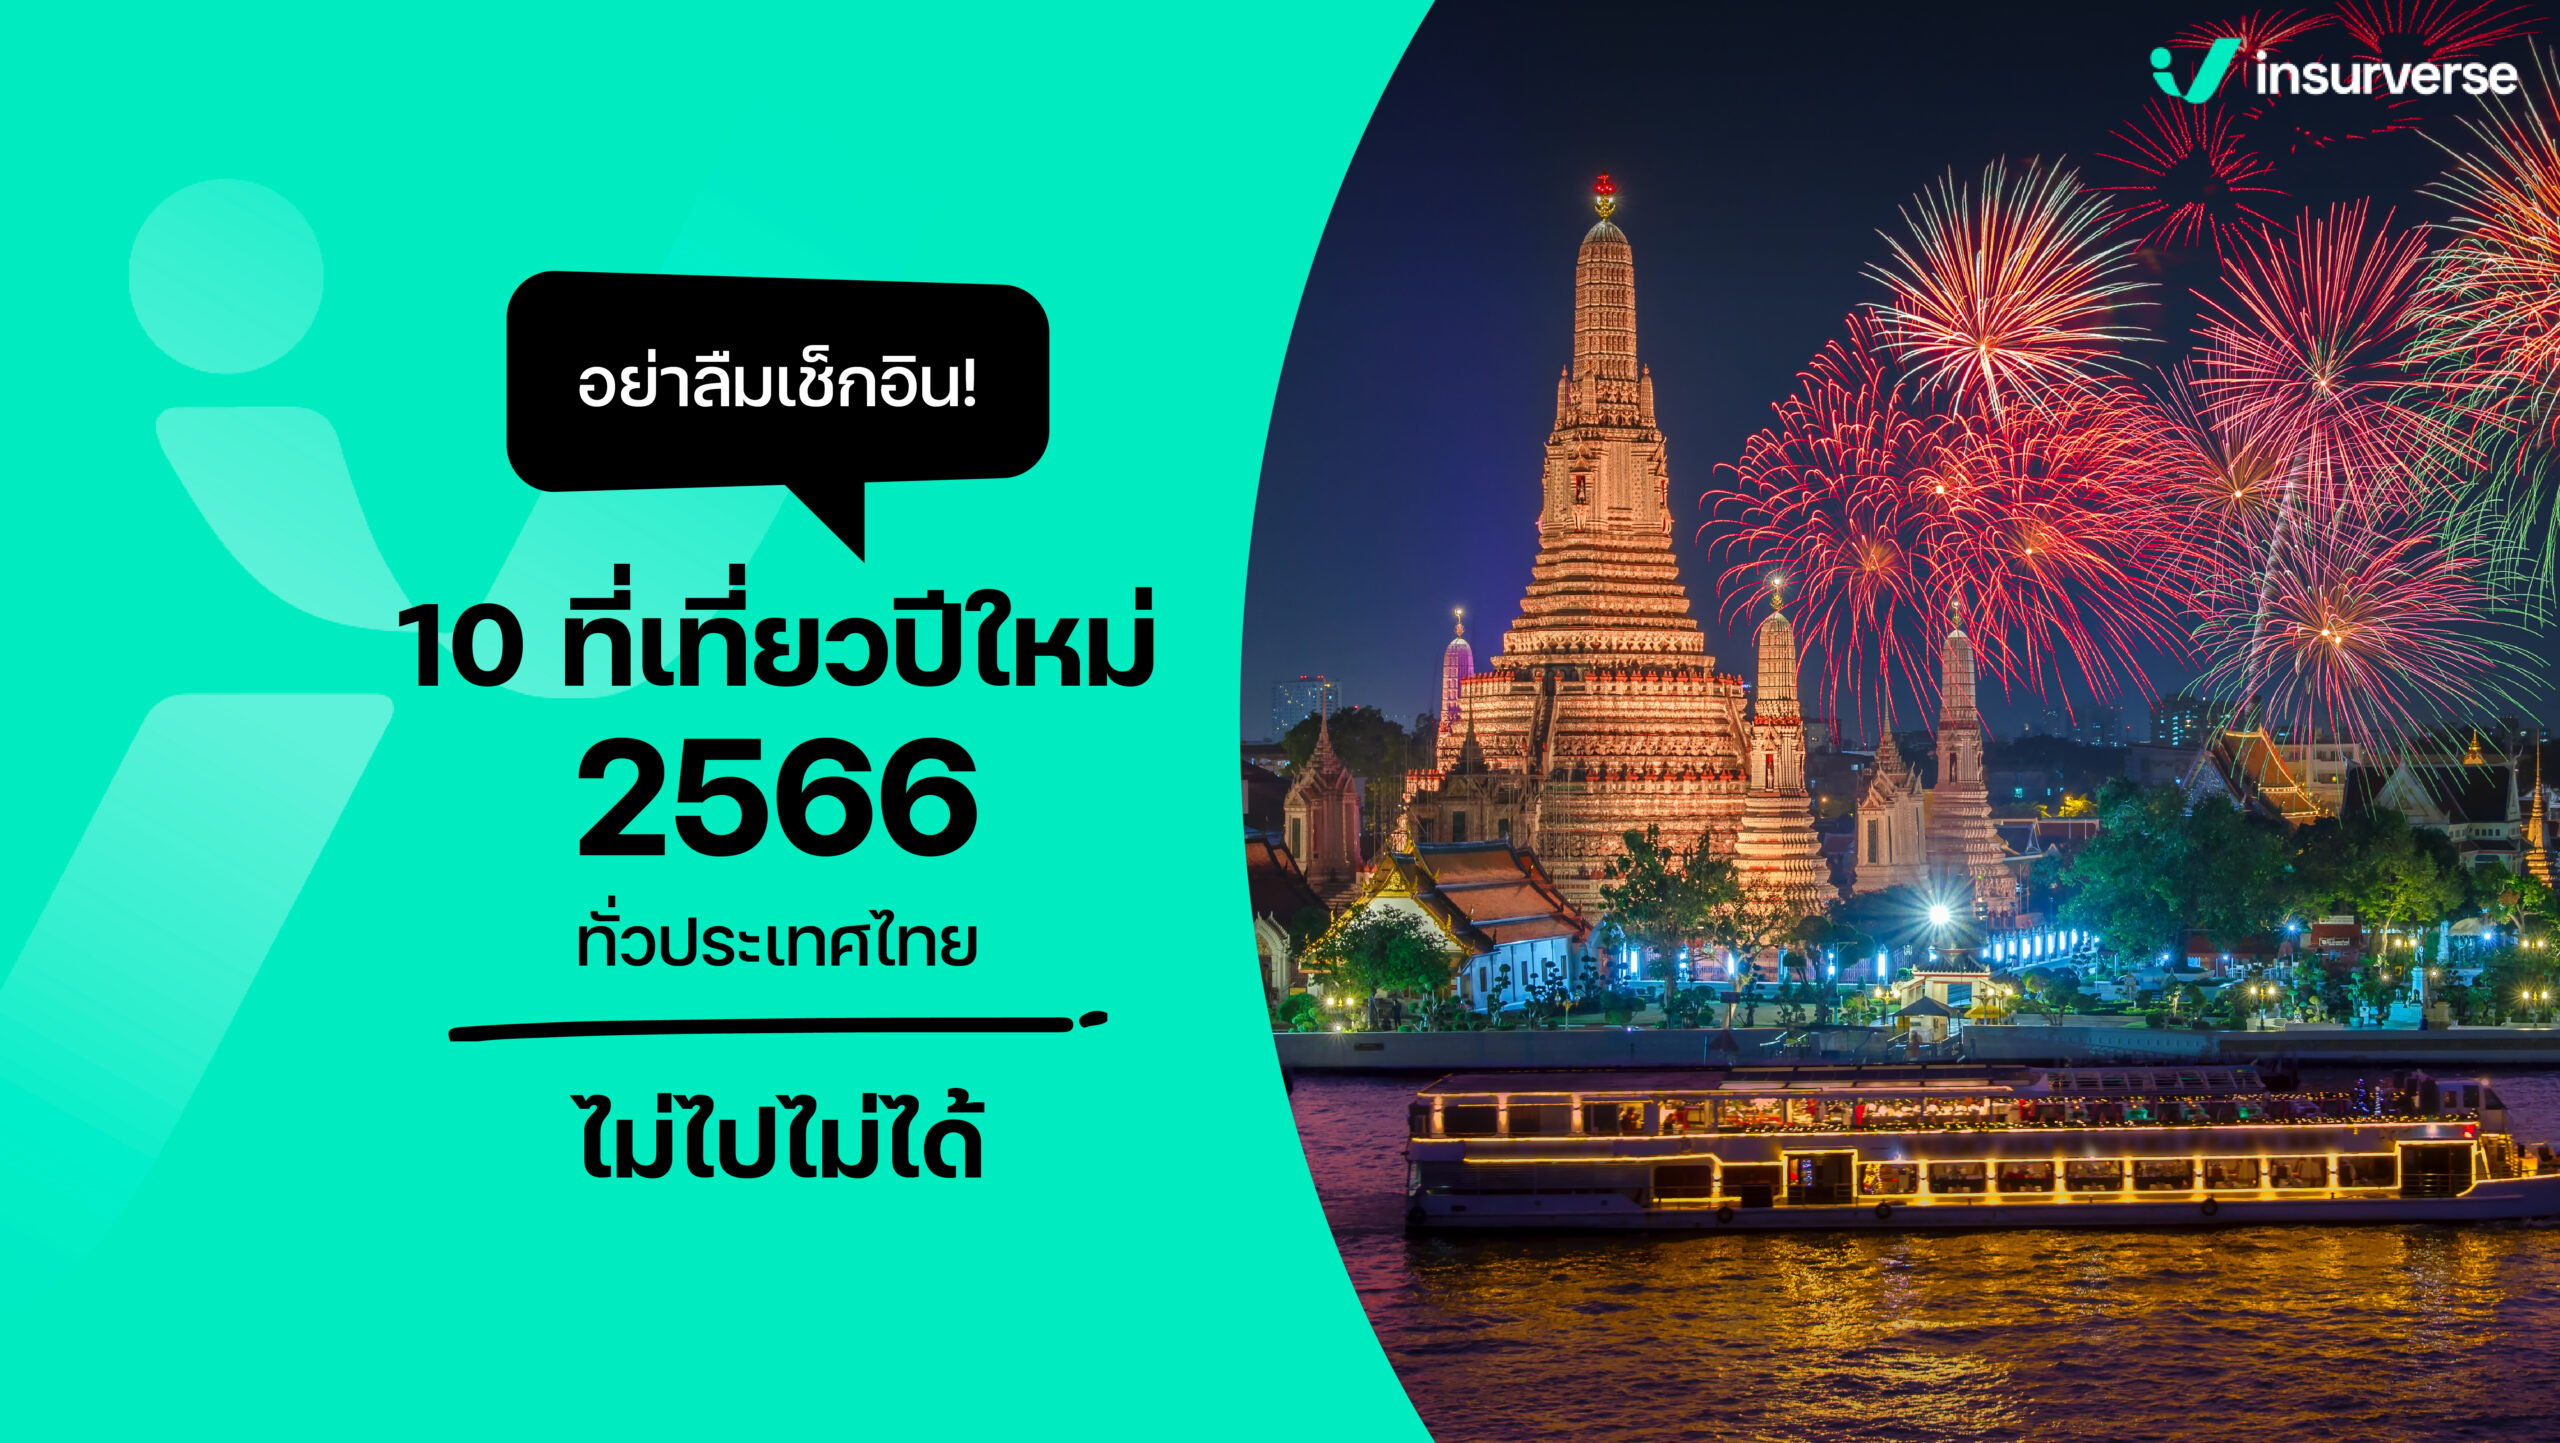 อย่าลืมเช็กอิน! 10 ที่เที่ยวปีใหม่ 2566 ทั่วประเทศไทย ไม่ไปไม่ได้